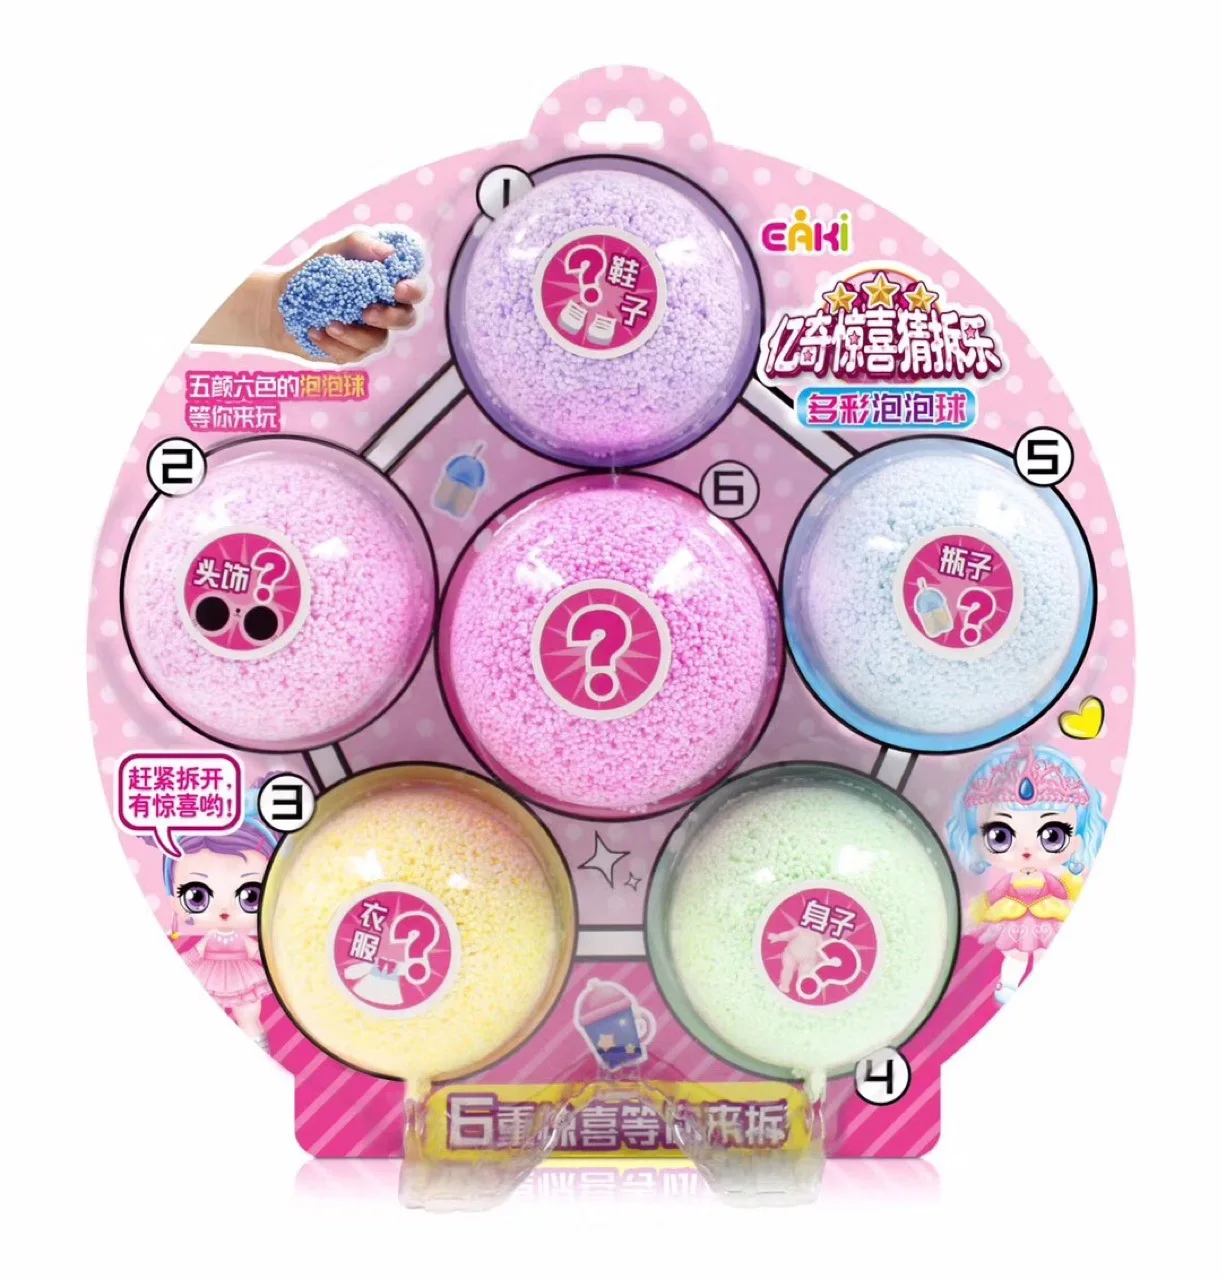 Yiqi новые продукты догадаться Сплит музыка Красочный пузырь мяч набор сюрприз мяч ручной работы игрушка девушки слепой шар большой набор